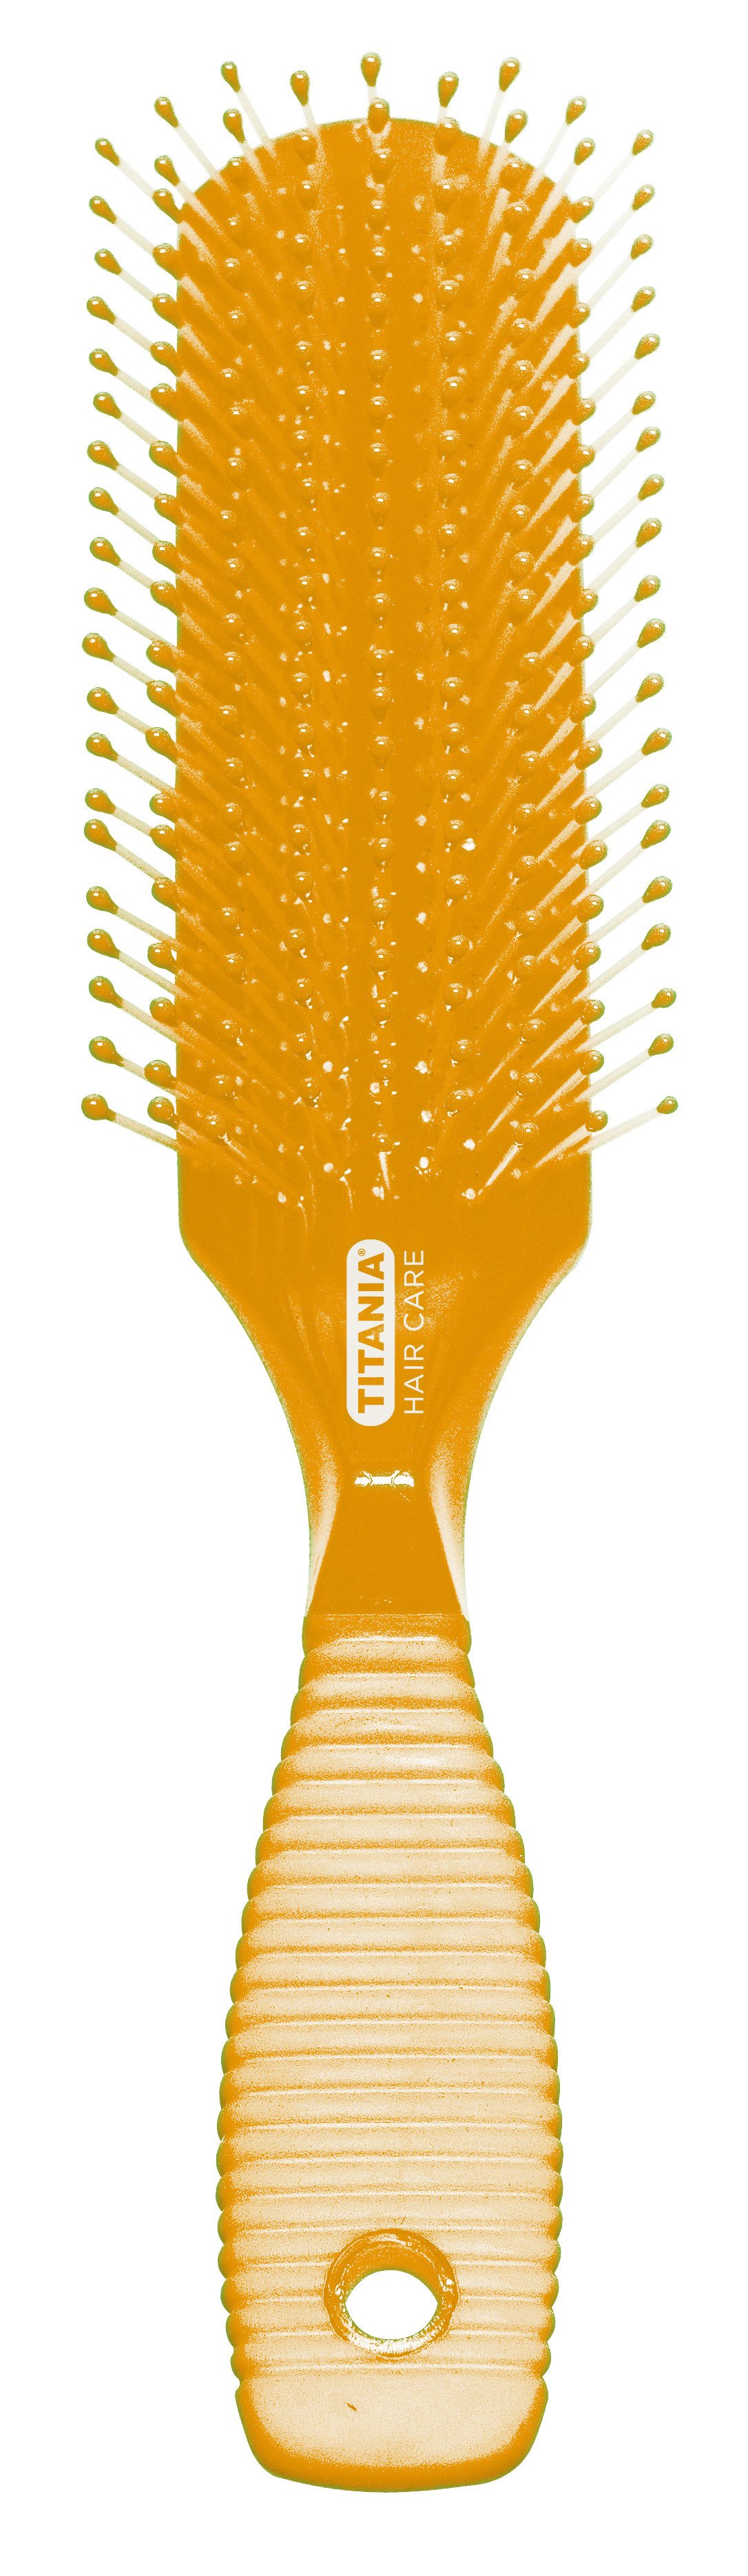 Щетка для волос Titania массажная, 9 рядов, оранжевый (1829 оранж) - фото 1